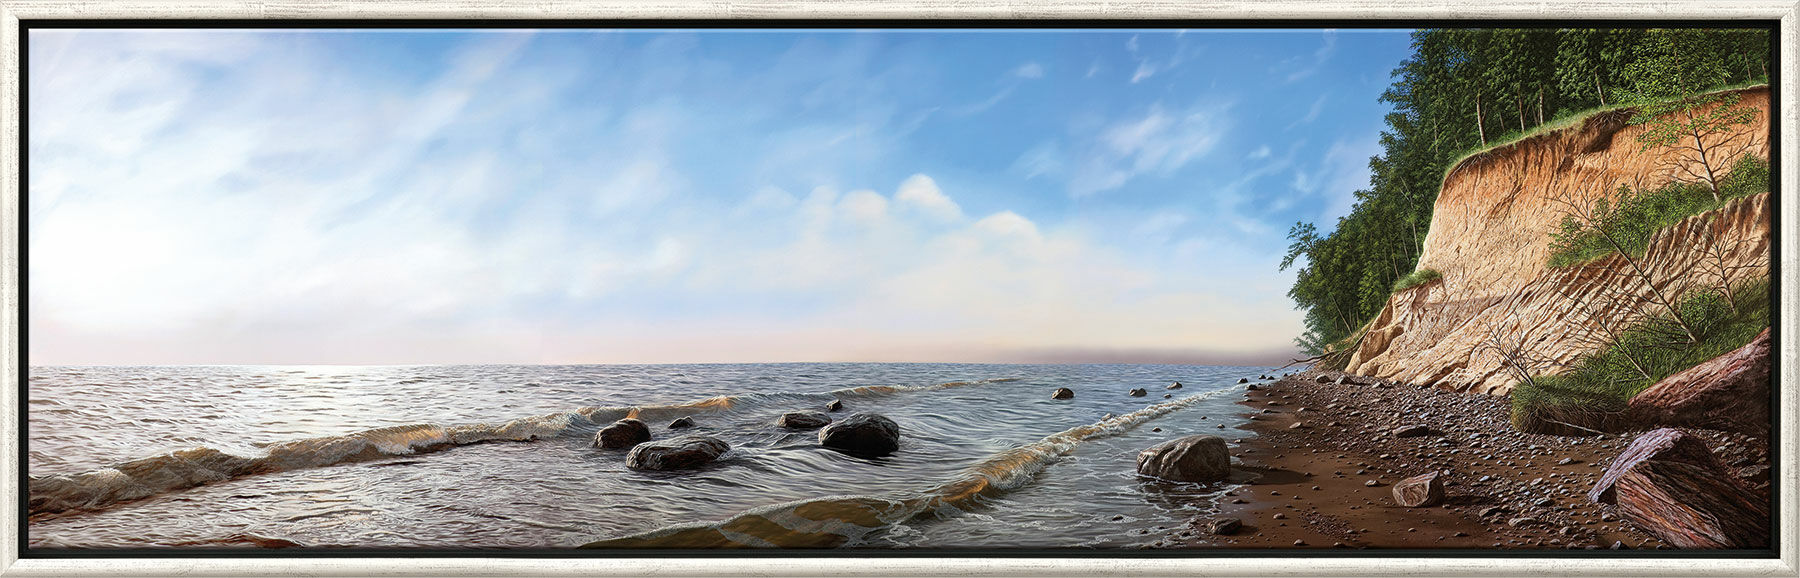 Billede "Den stejle kyst ved Brodten - Østersøen" (2009), indrammet von Gerd Bannuscher